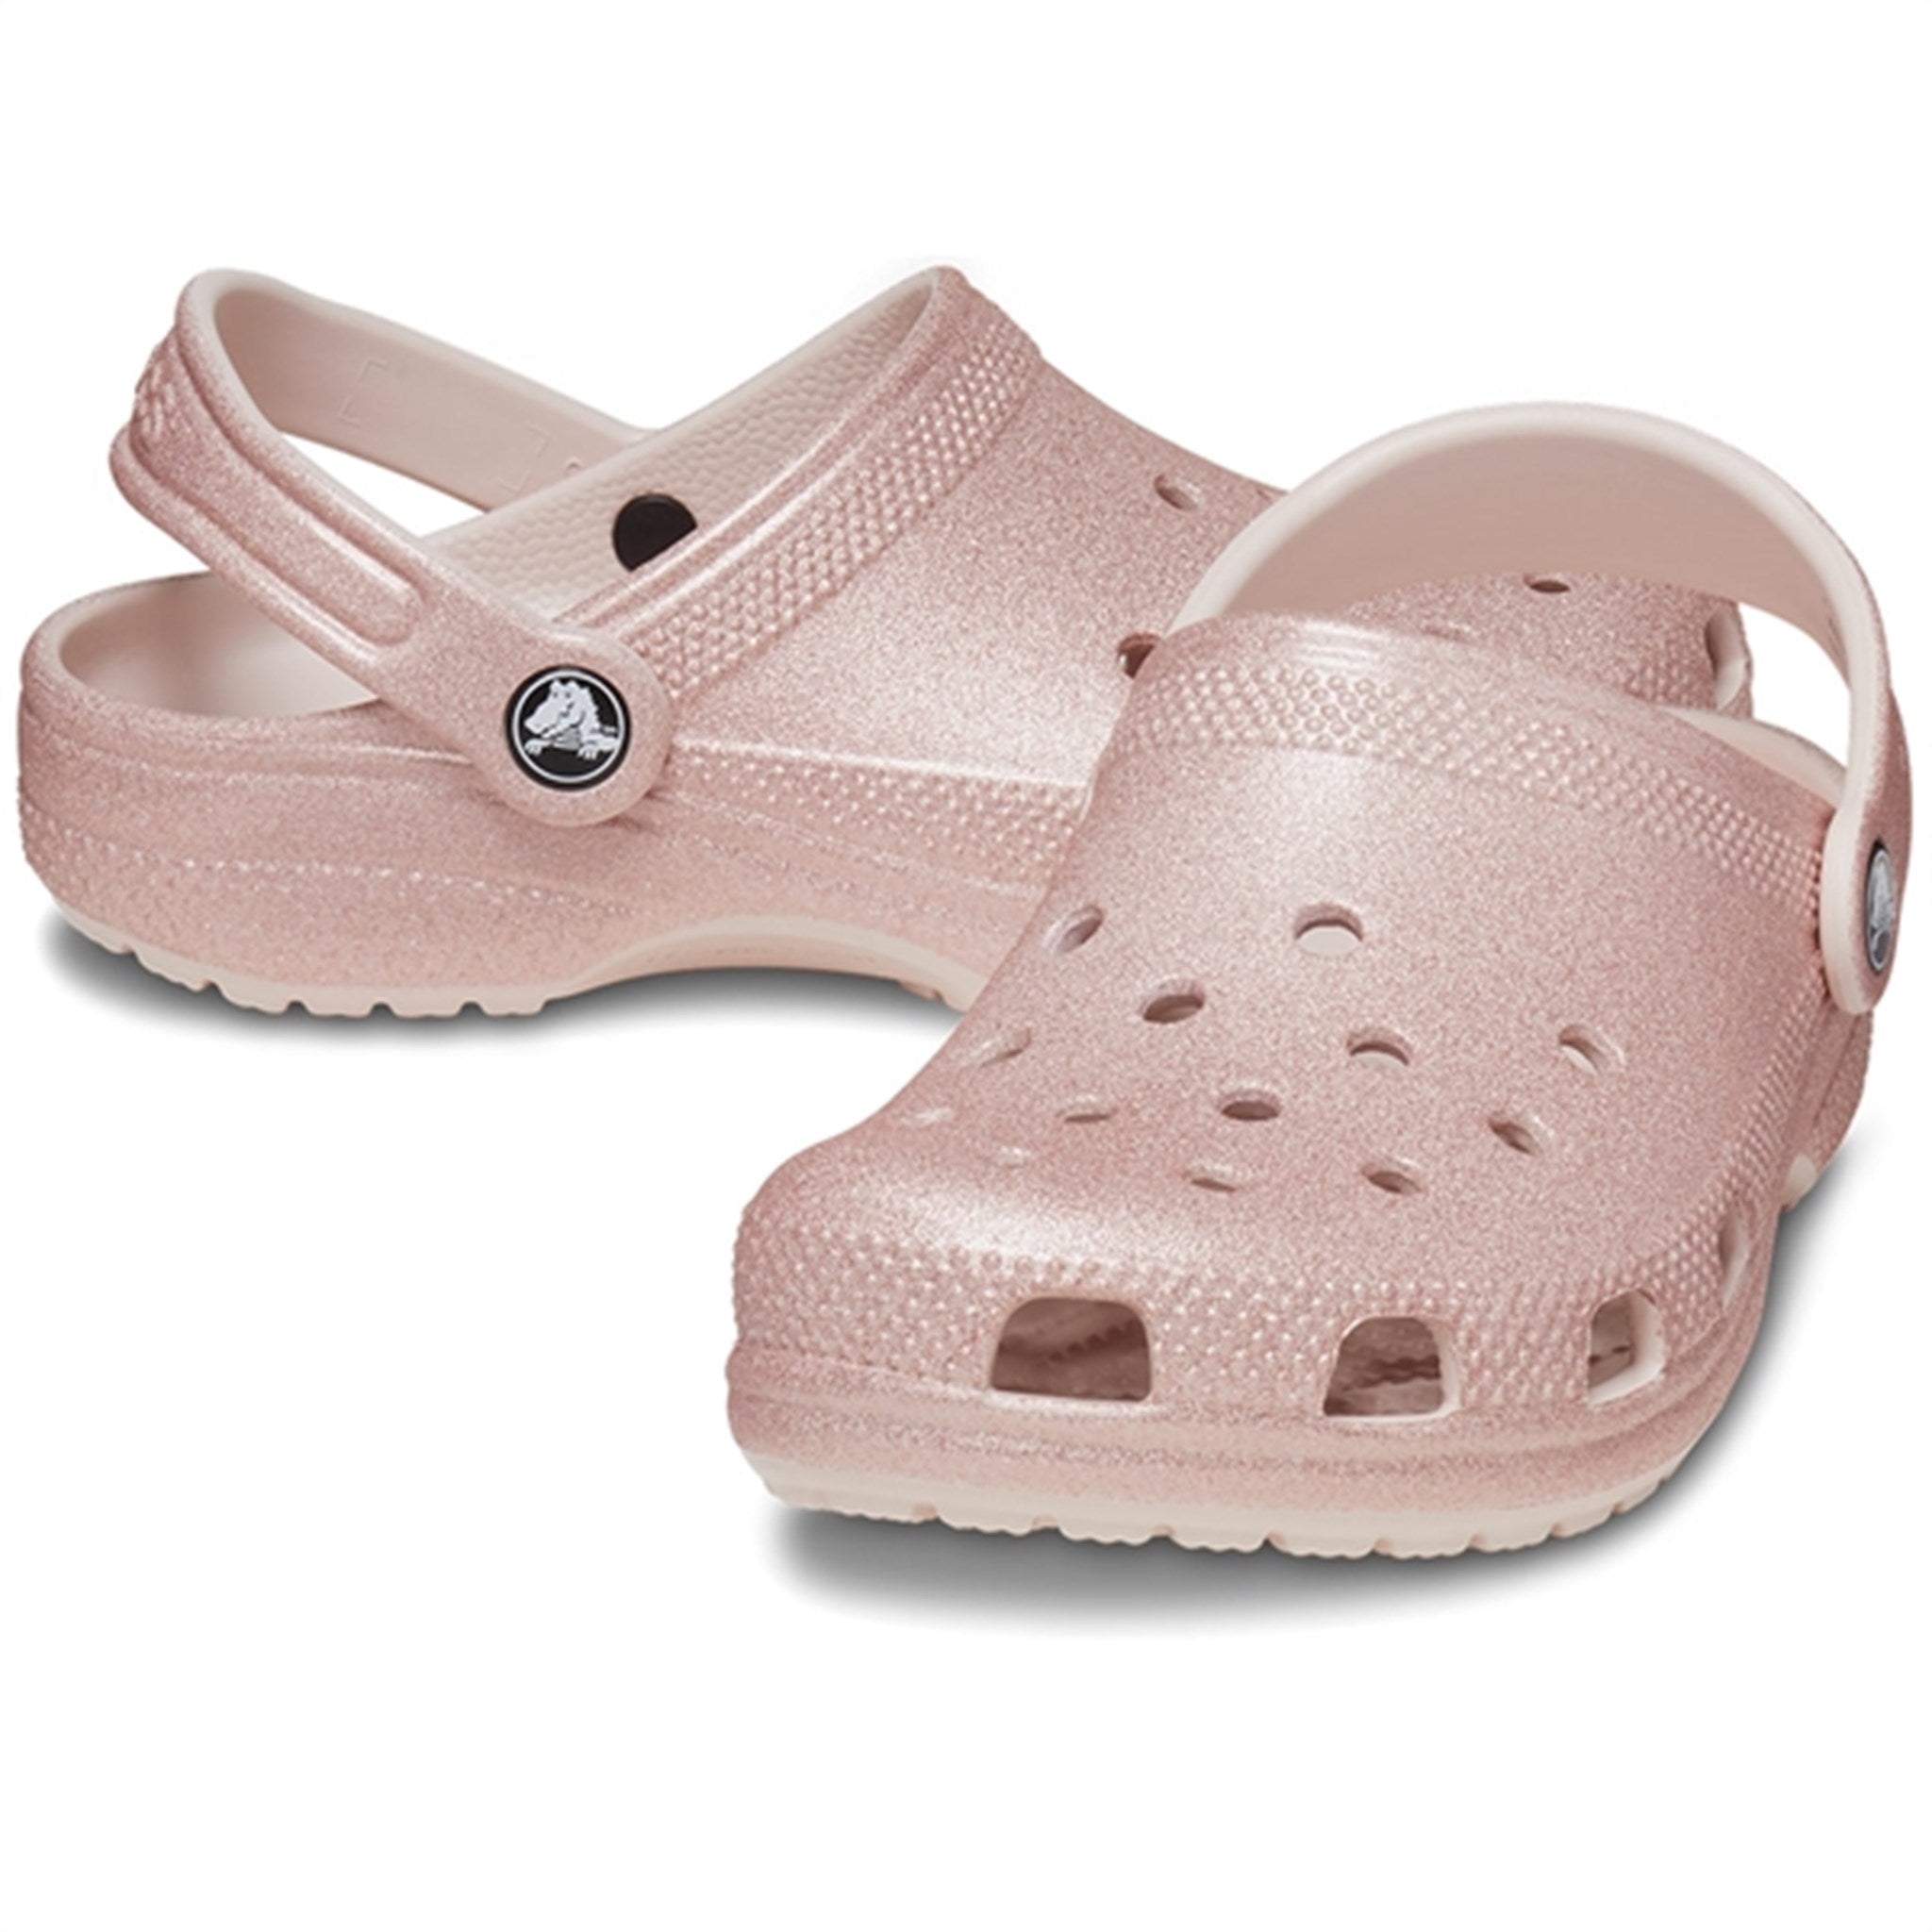 踏入舒适与时尚并存的世界，穿上 Crocs 经典闪闪发光凉鞋，石英色闪光 4